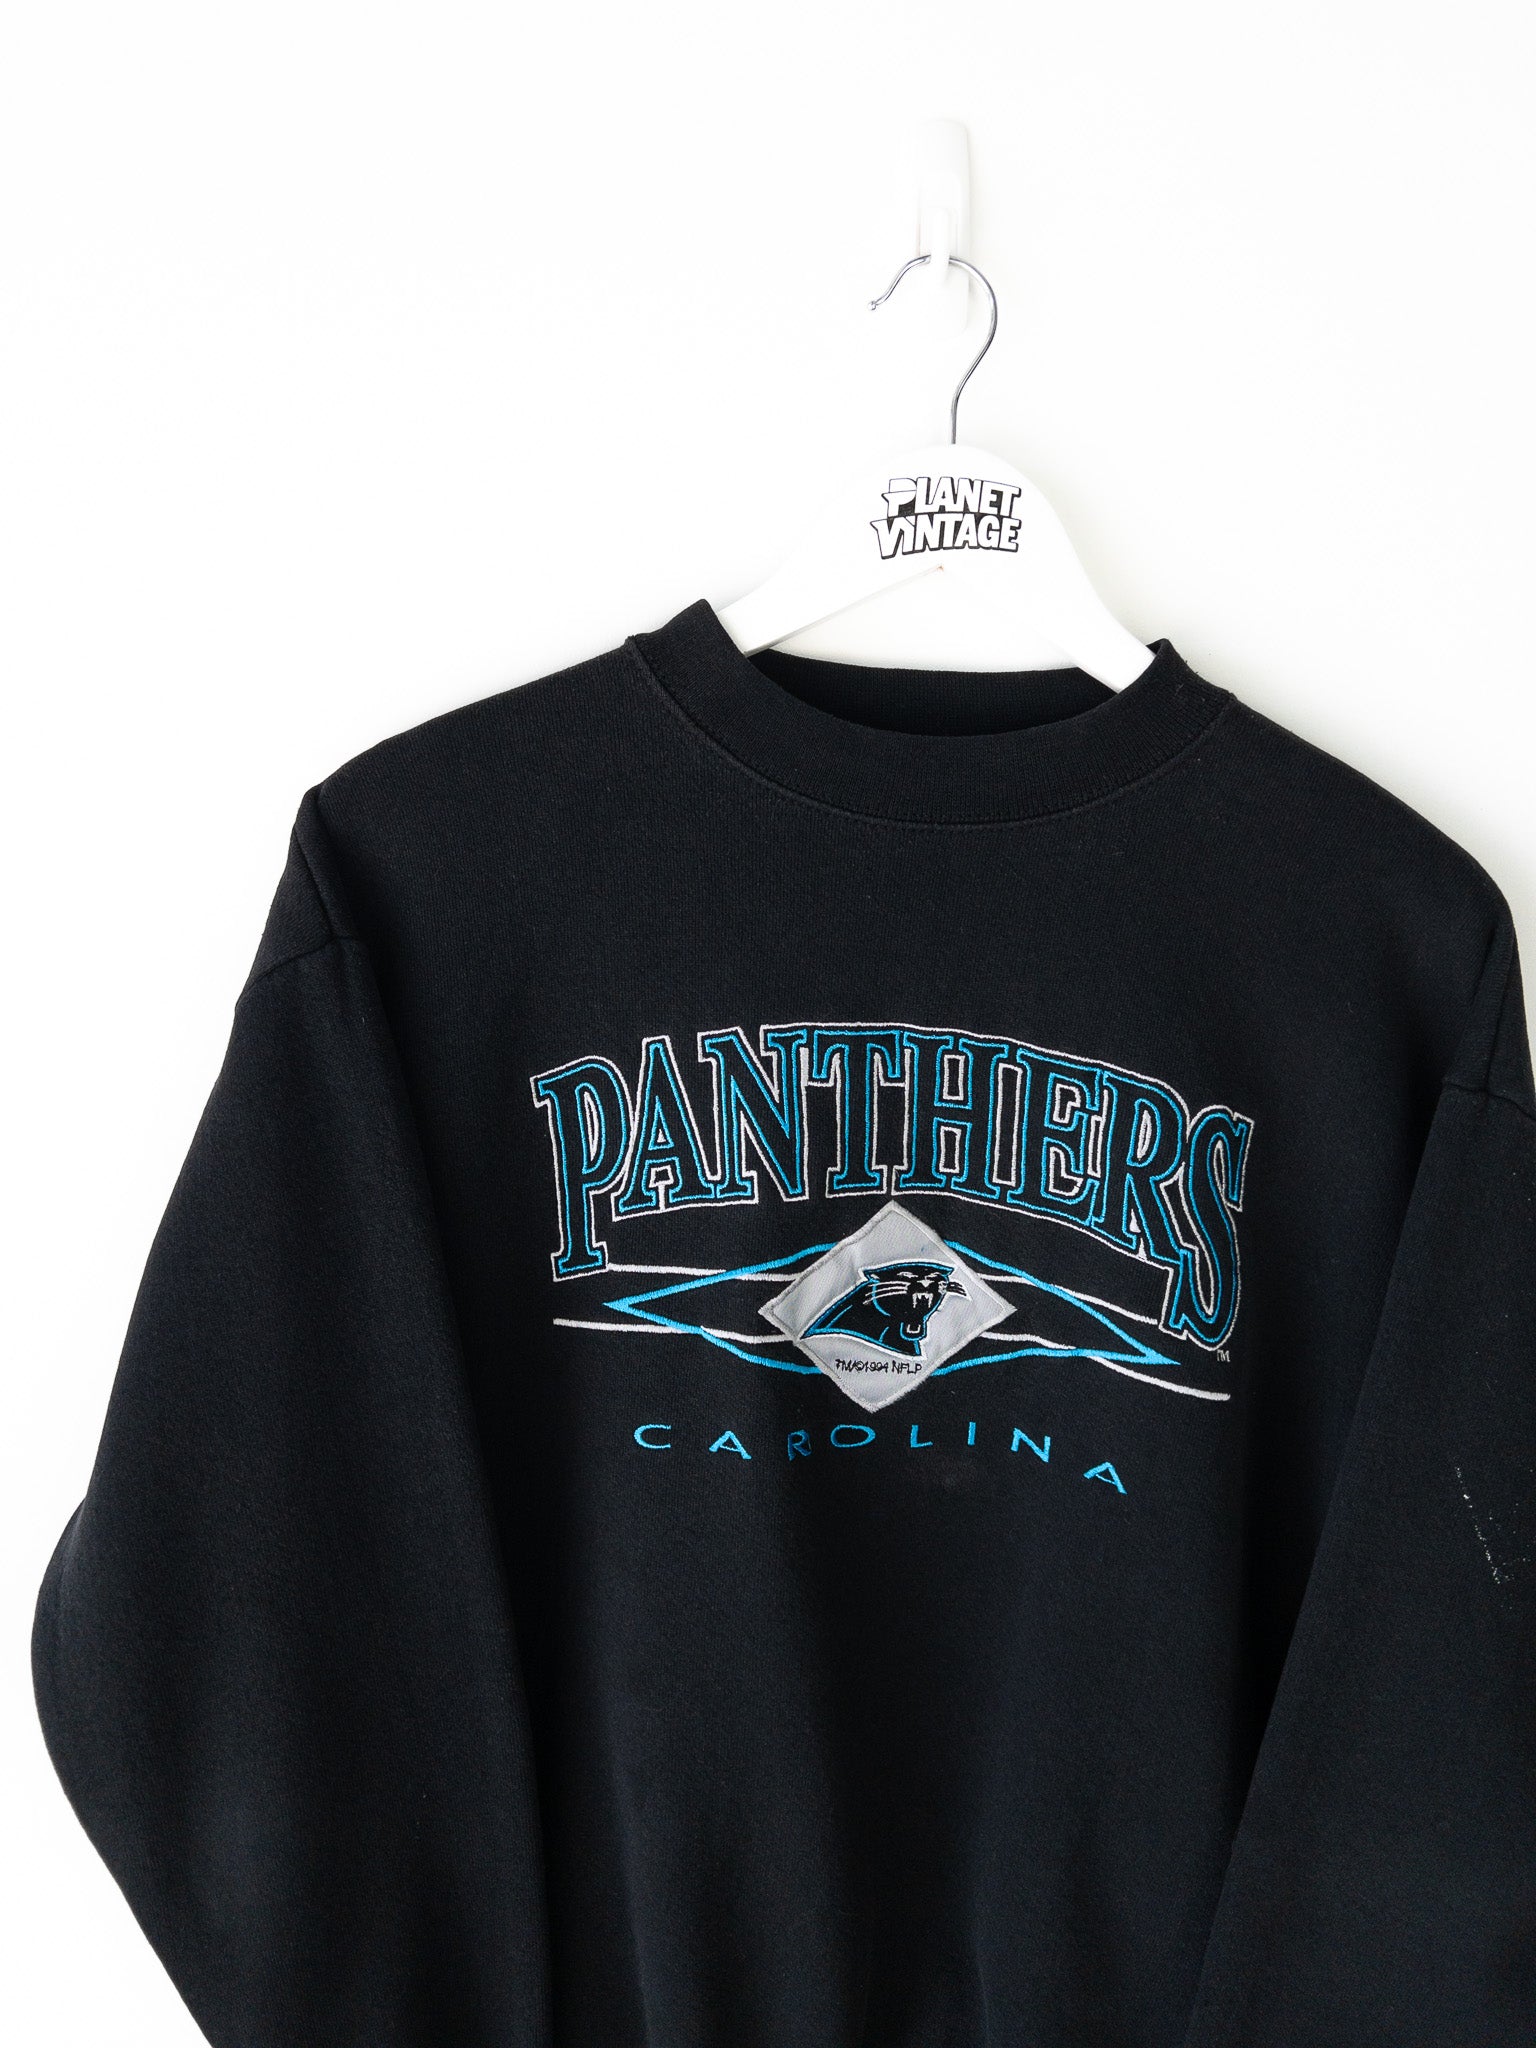 Vintage Carolina Panthers Sweatshirt (M)